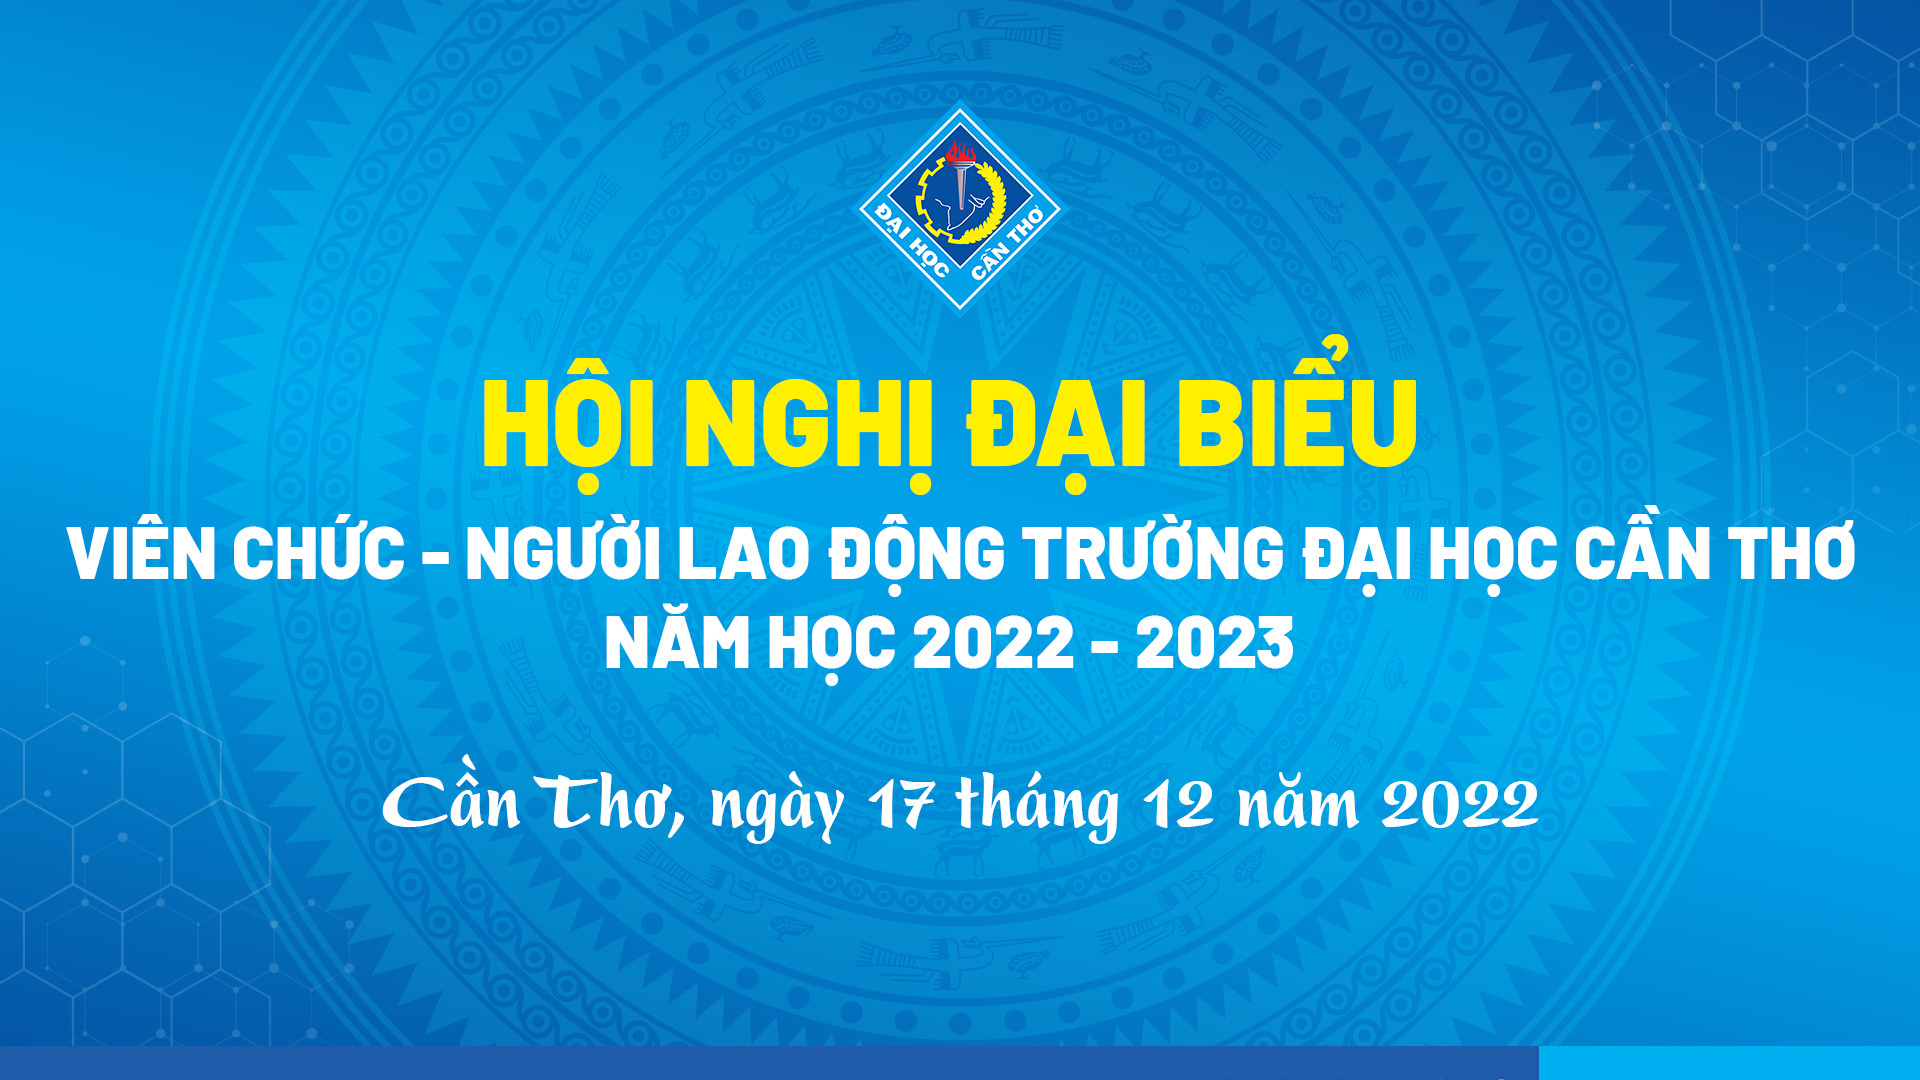 Hội nghị Đại biểu VC-NLĐ: Hội nghị Đại biểu VC-NLĐ là sự kiện quan trọng trong lịch sử Việt Nam. Đây là cơ hội để thể hiện tình yêu quê hương và đoàn kết trong cả nước. Với những hình ảnh đẹp, Hội nghị Đại biểu VC-NLĐ sẽ đem lại niềm tự hào cho mỗi công dân Việt Nam.